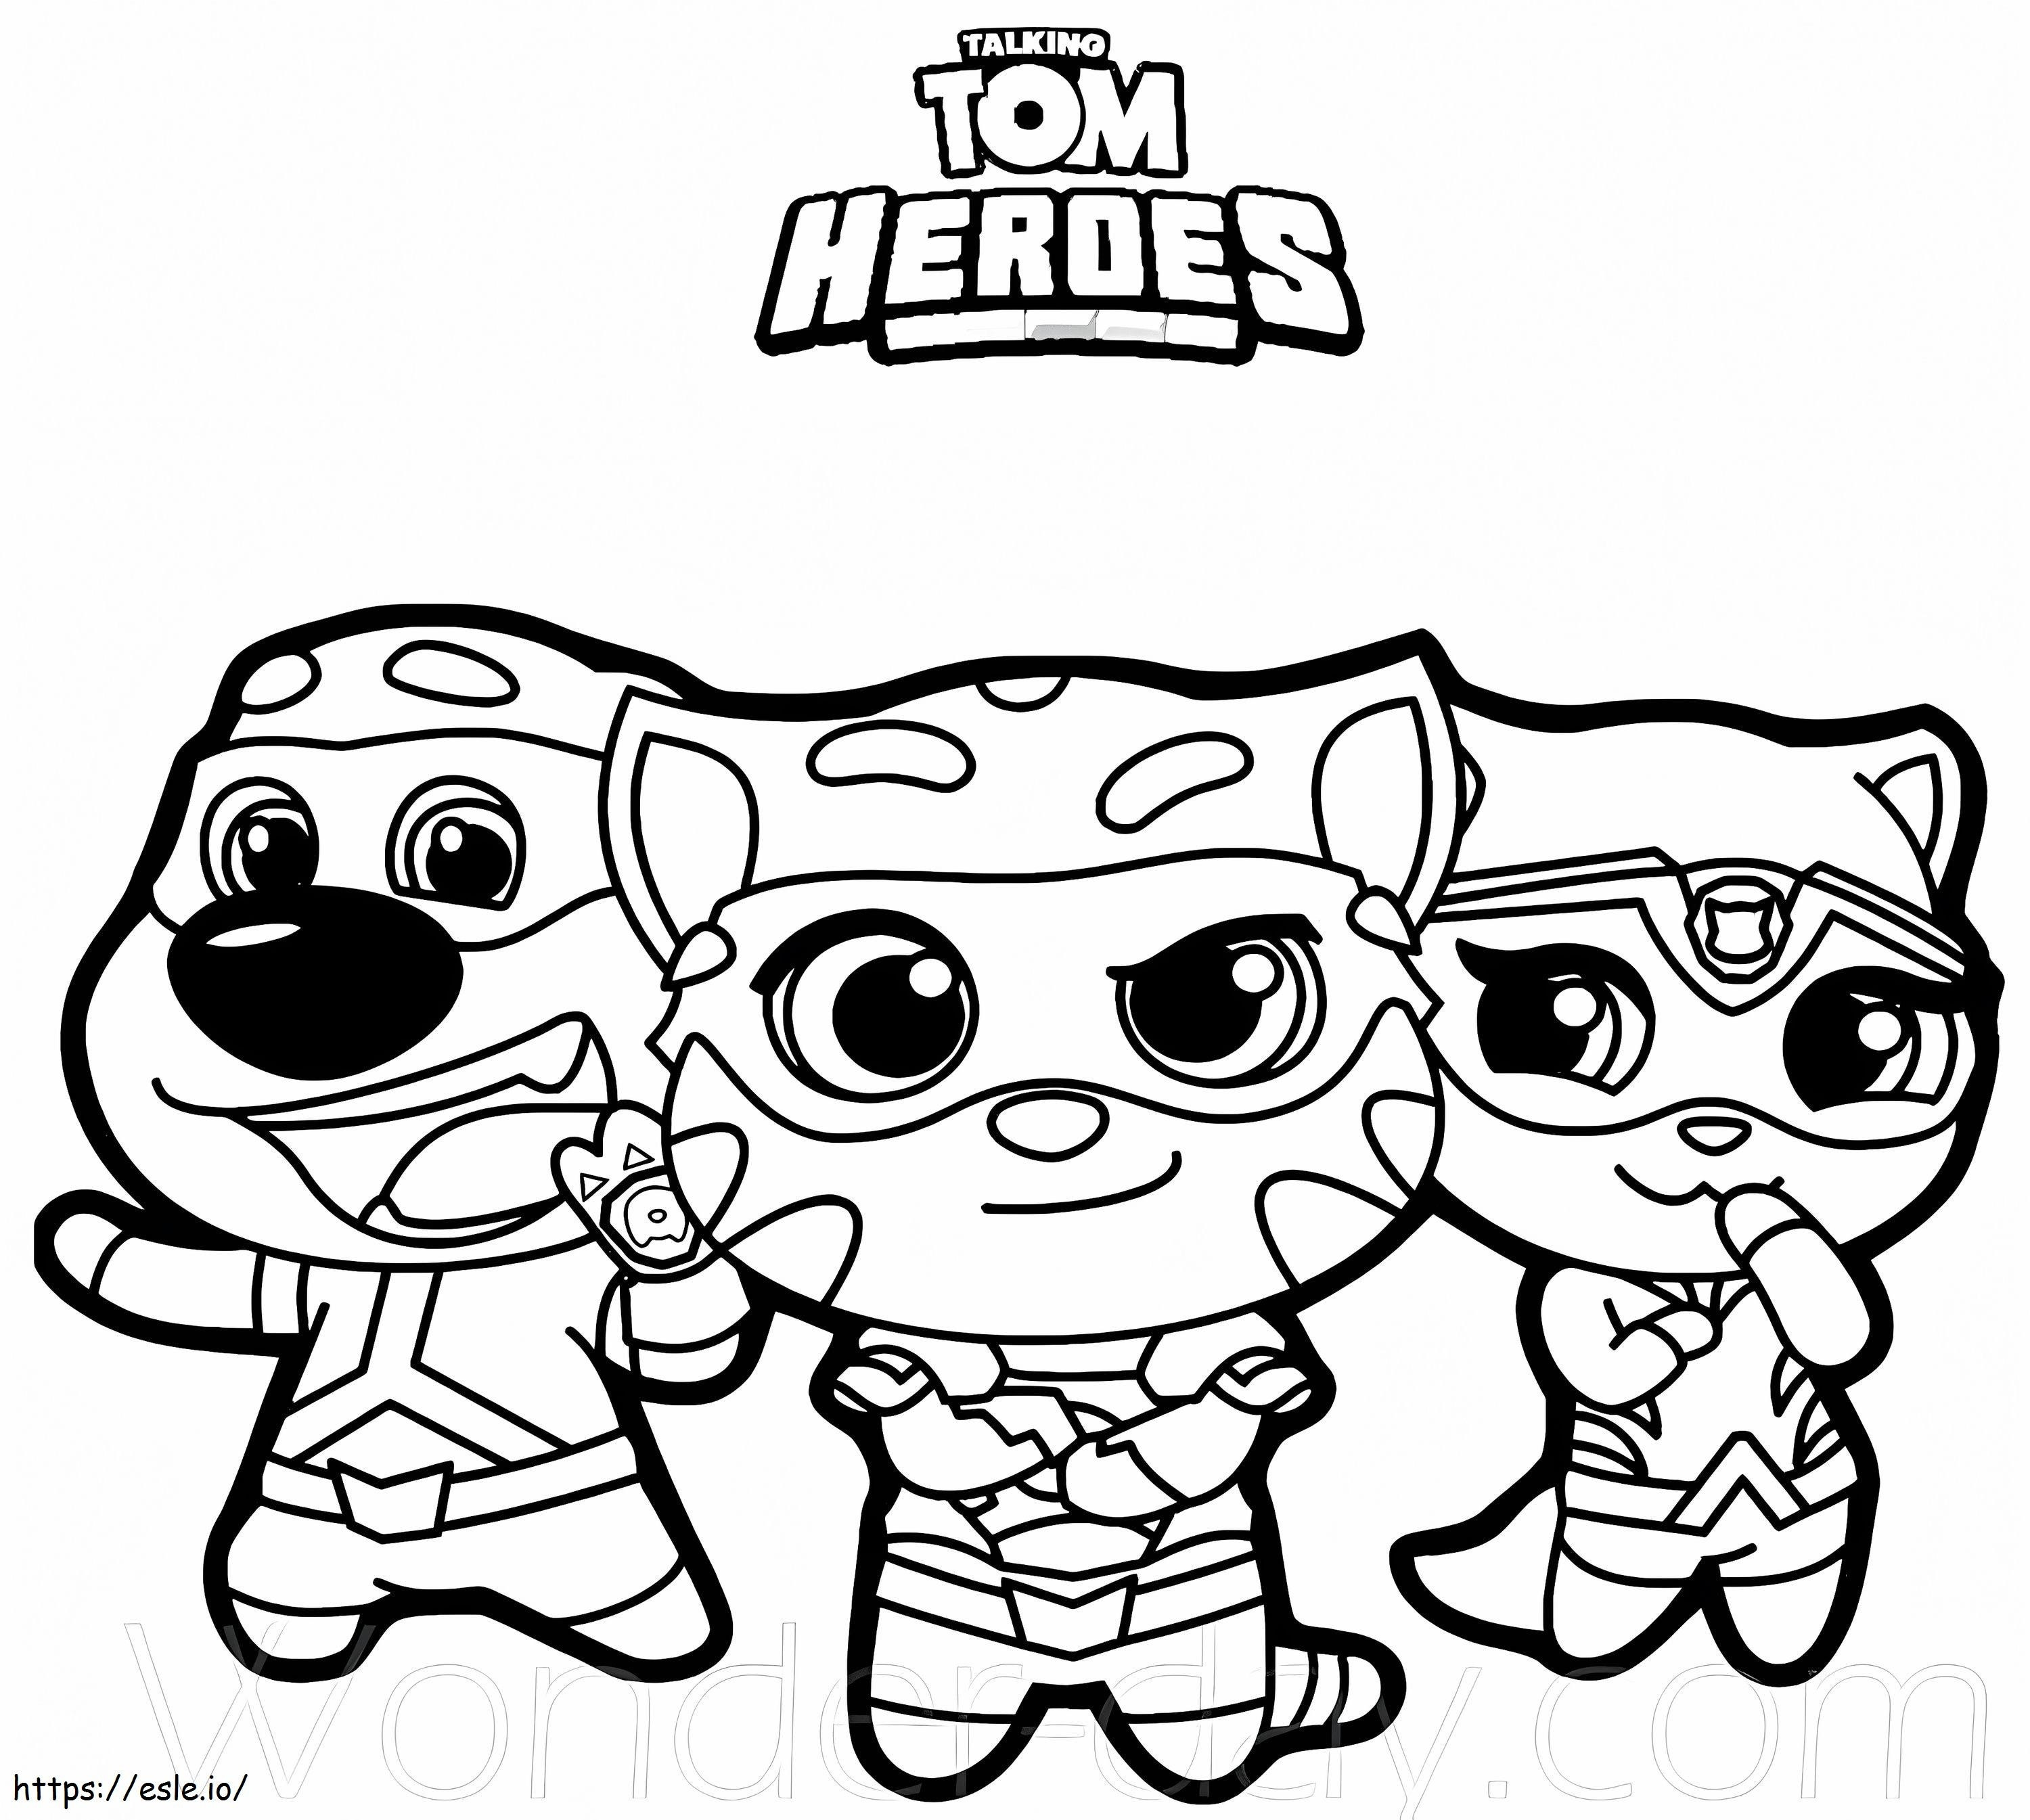 Cute Talking Tom Heroes coloring page